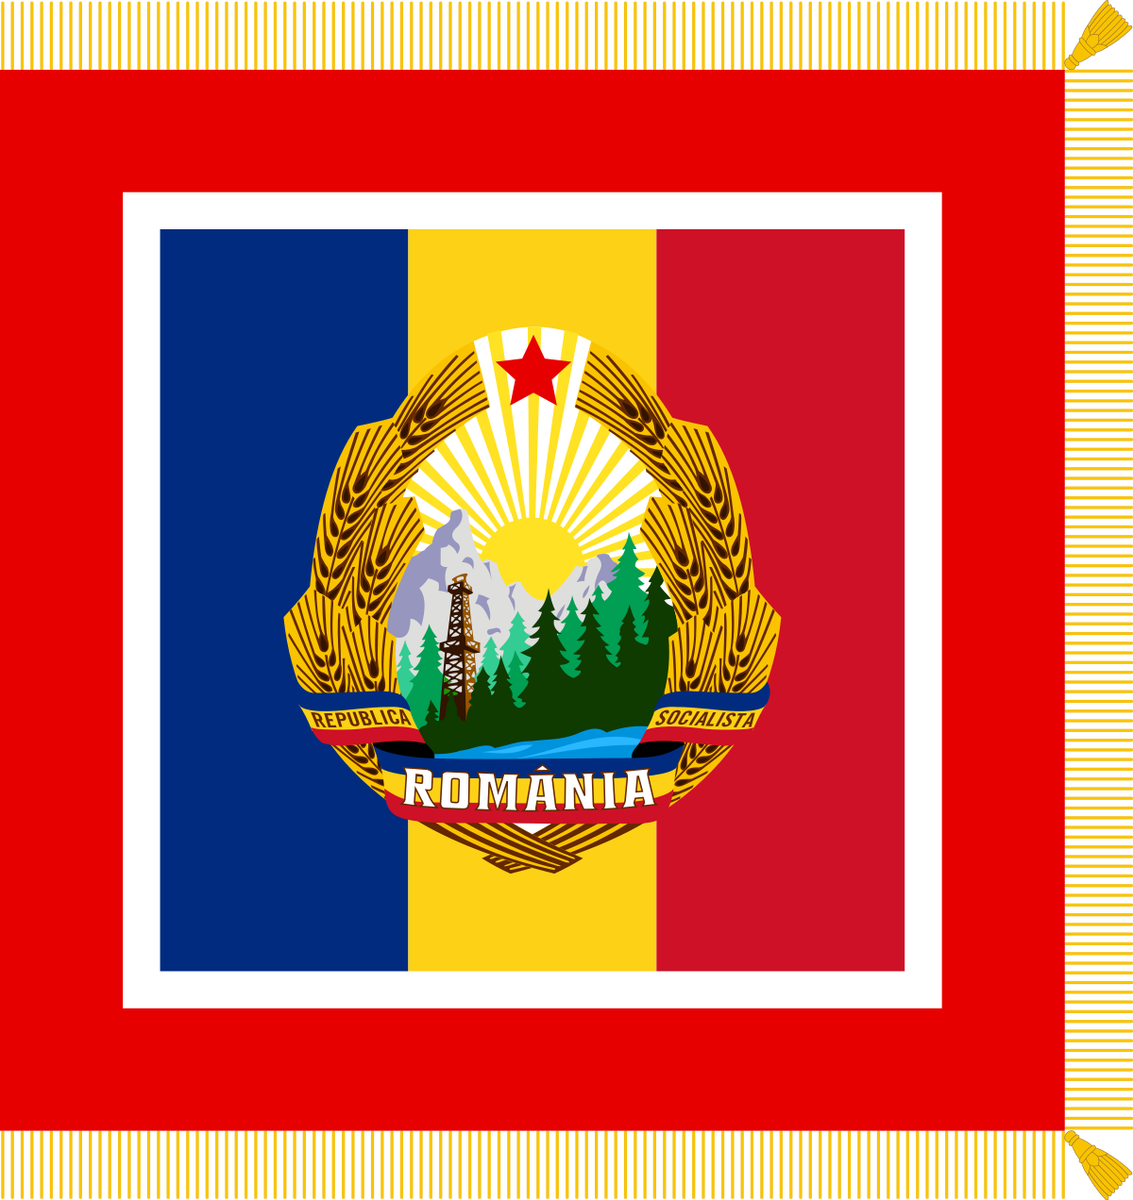 Социалистическая республика румыния. Герб социалистической Республики Румыния. Флаг социалистической Румынии. Социалистическая Республика Румыния флаг. Герб Румынии социалистической.